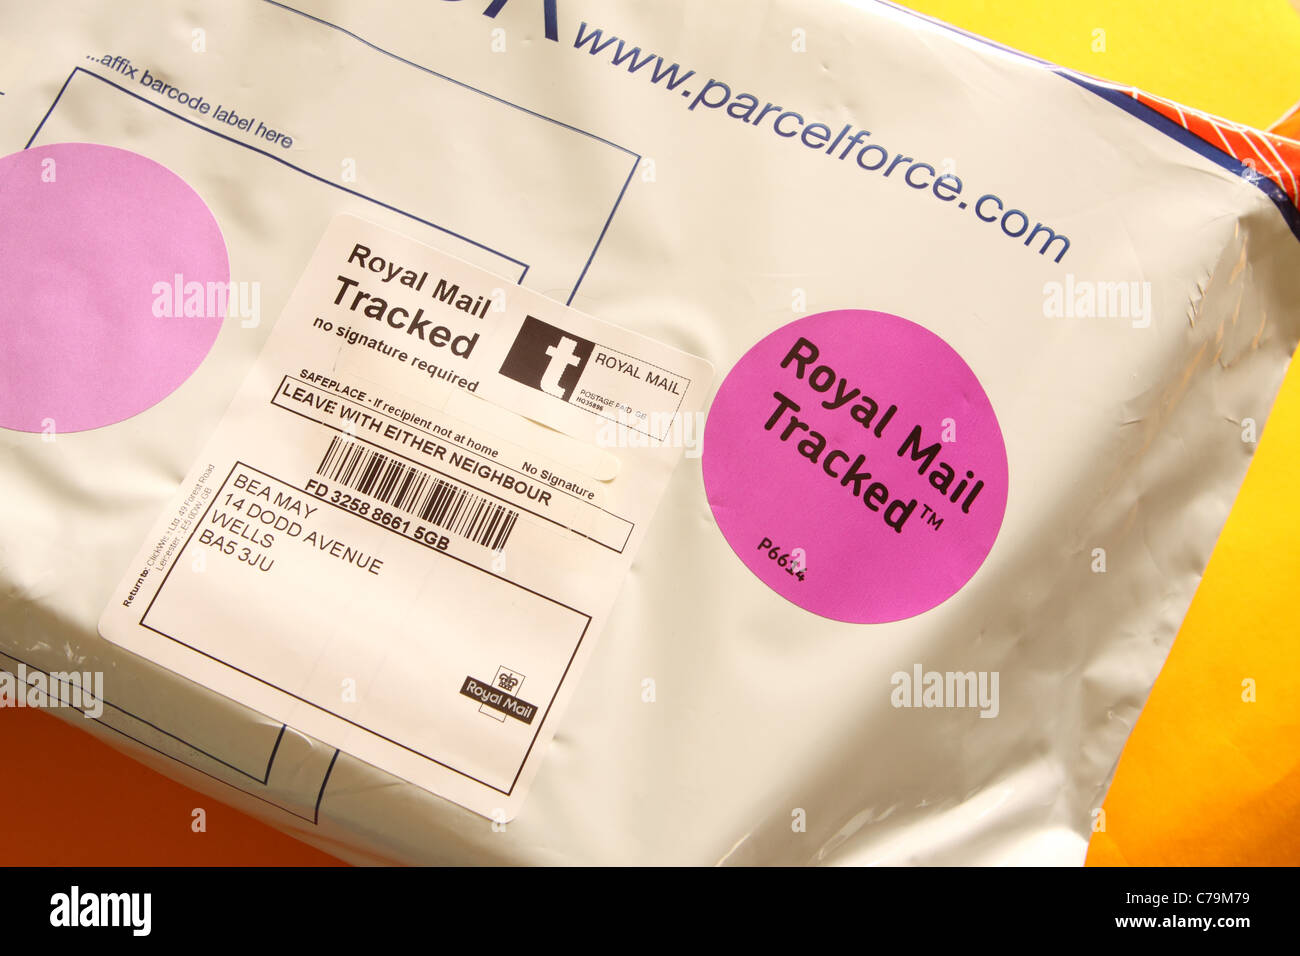 Royal Mail Tracked parcel Service de livraison de paquets Banque D'Images